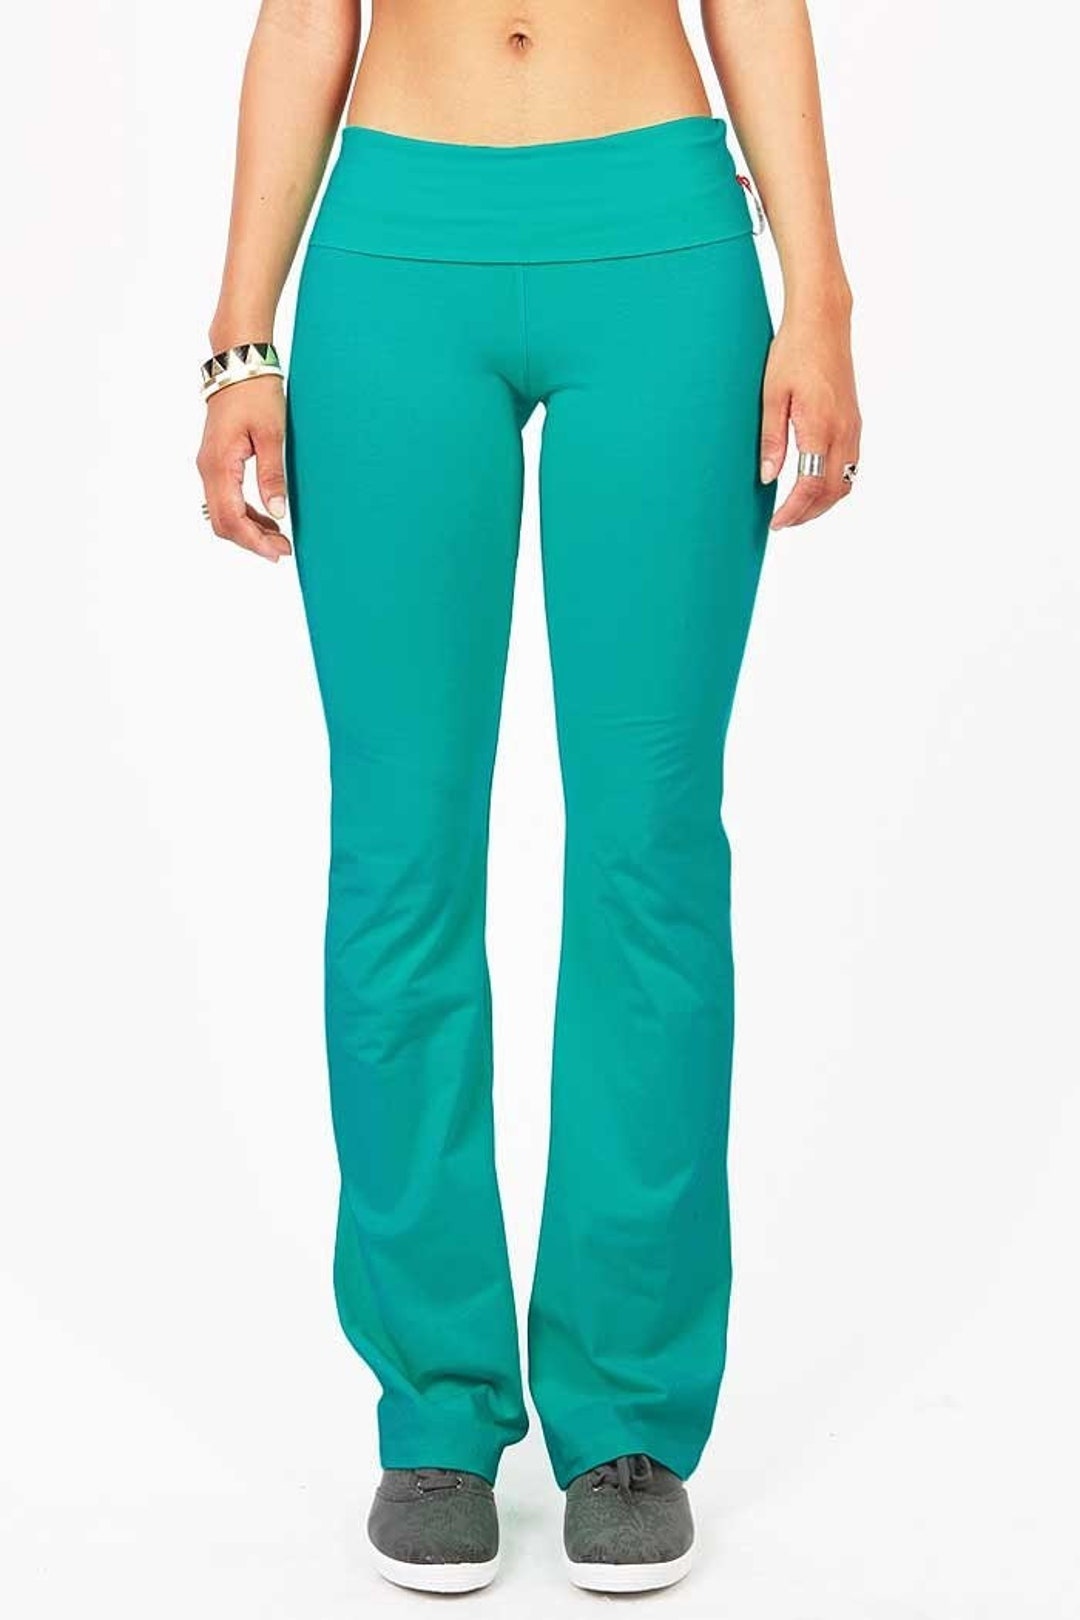 Lululemon EUC fold over Women's leggings size 8 high or low rise - $15 -  From Jennifer